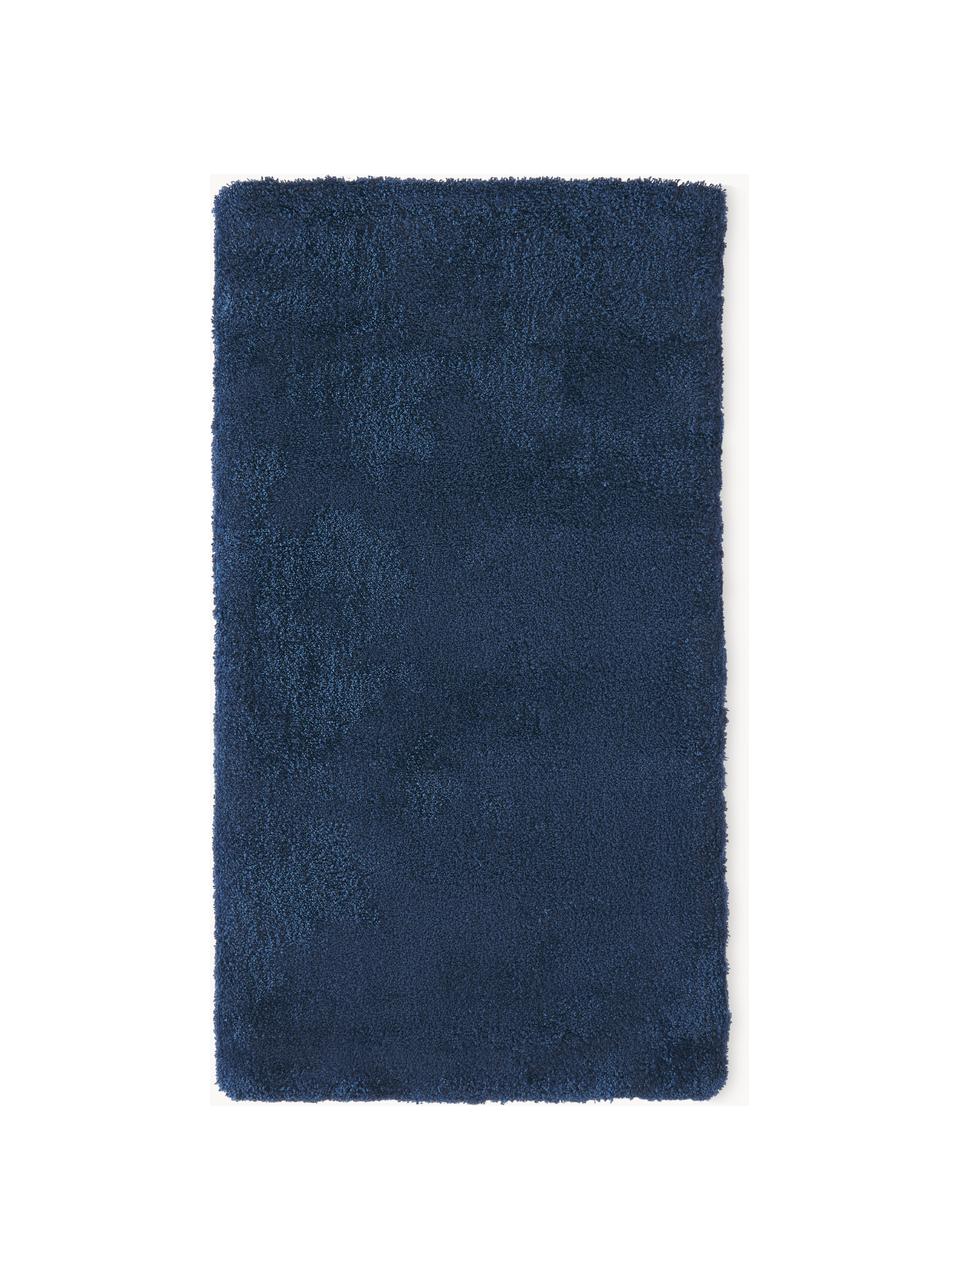 Puszysty dywan z długim włosiem Leighton, Ciemny niebieski, S 160 x D 230 cm (Rozmiar M)